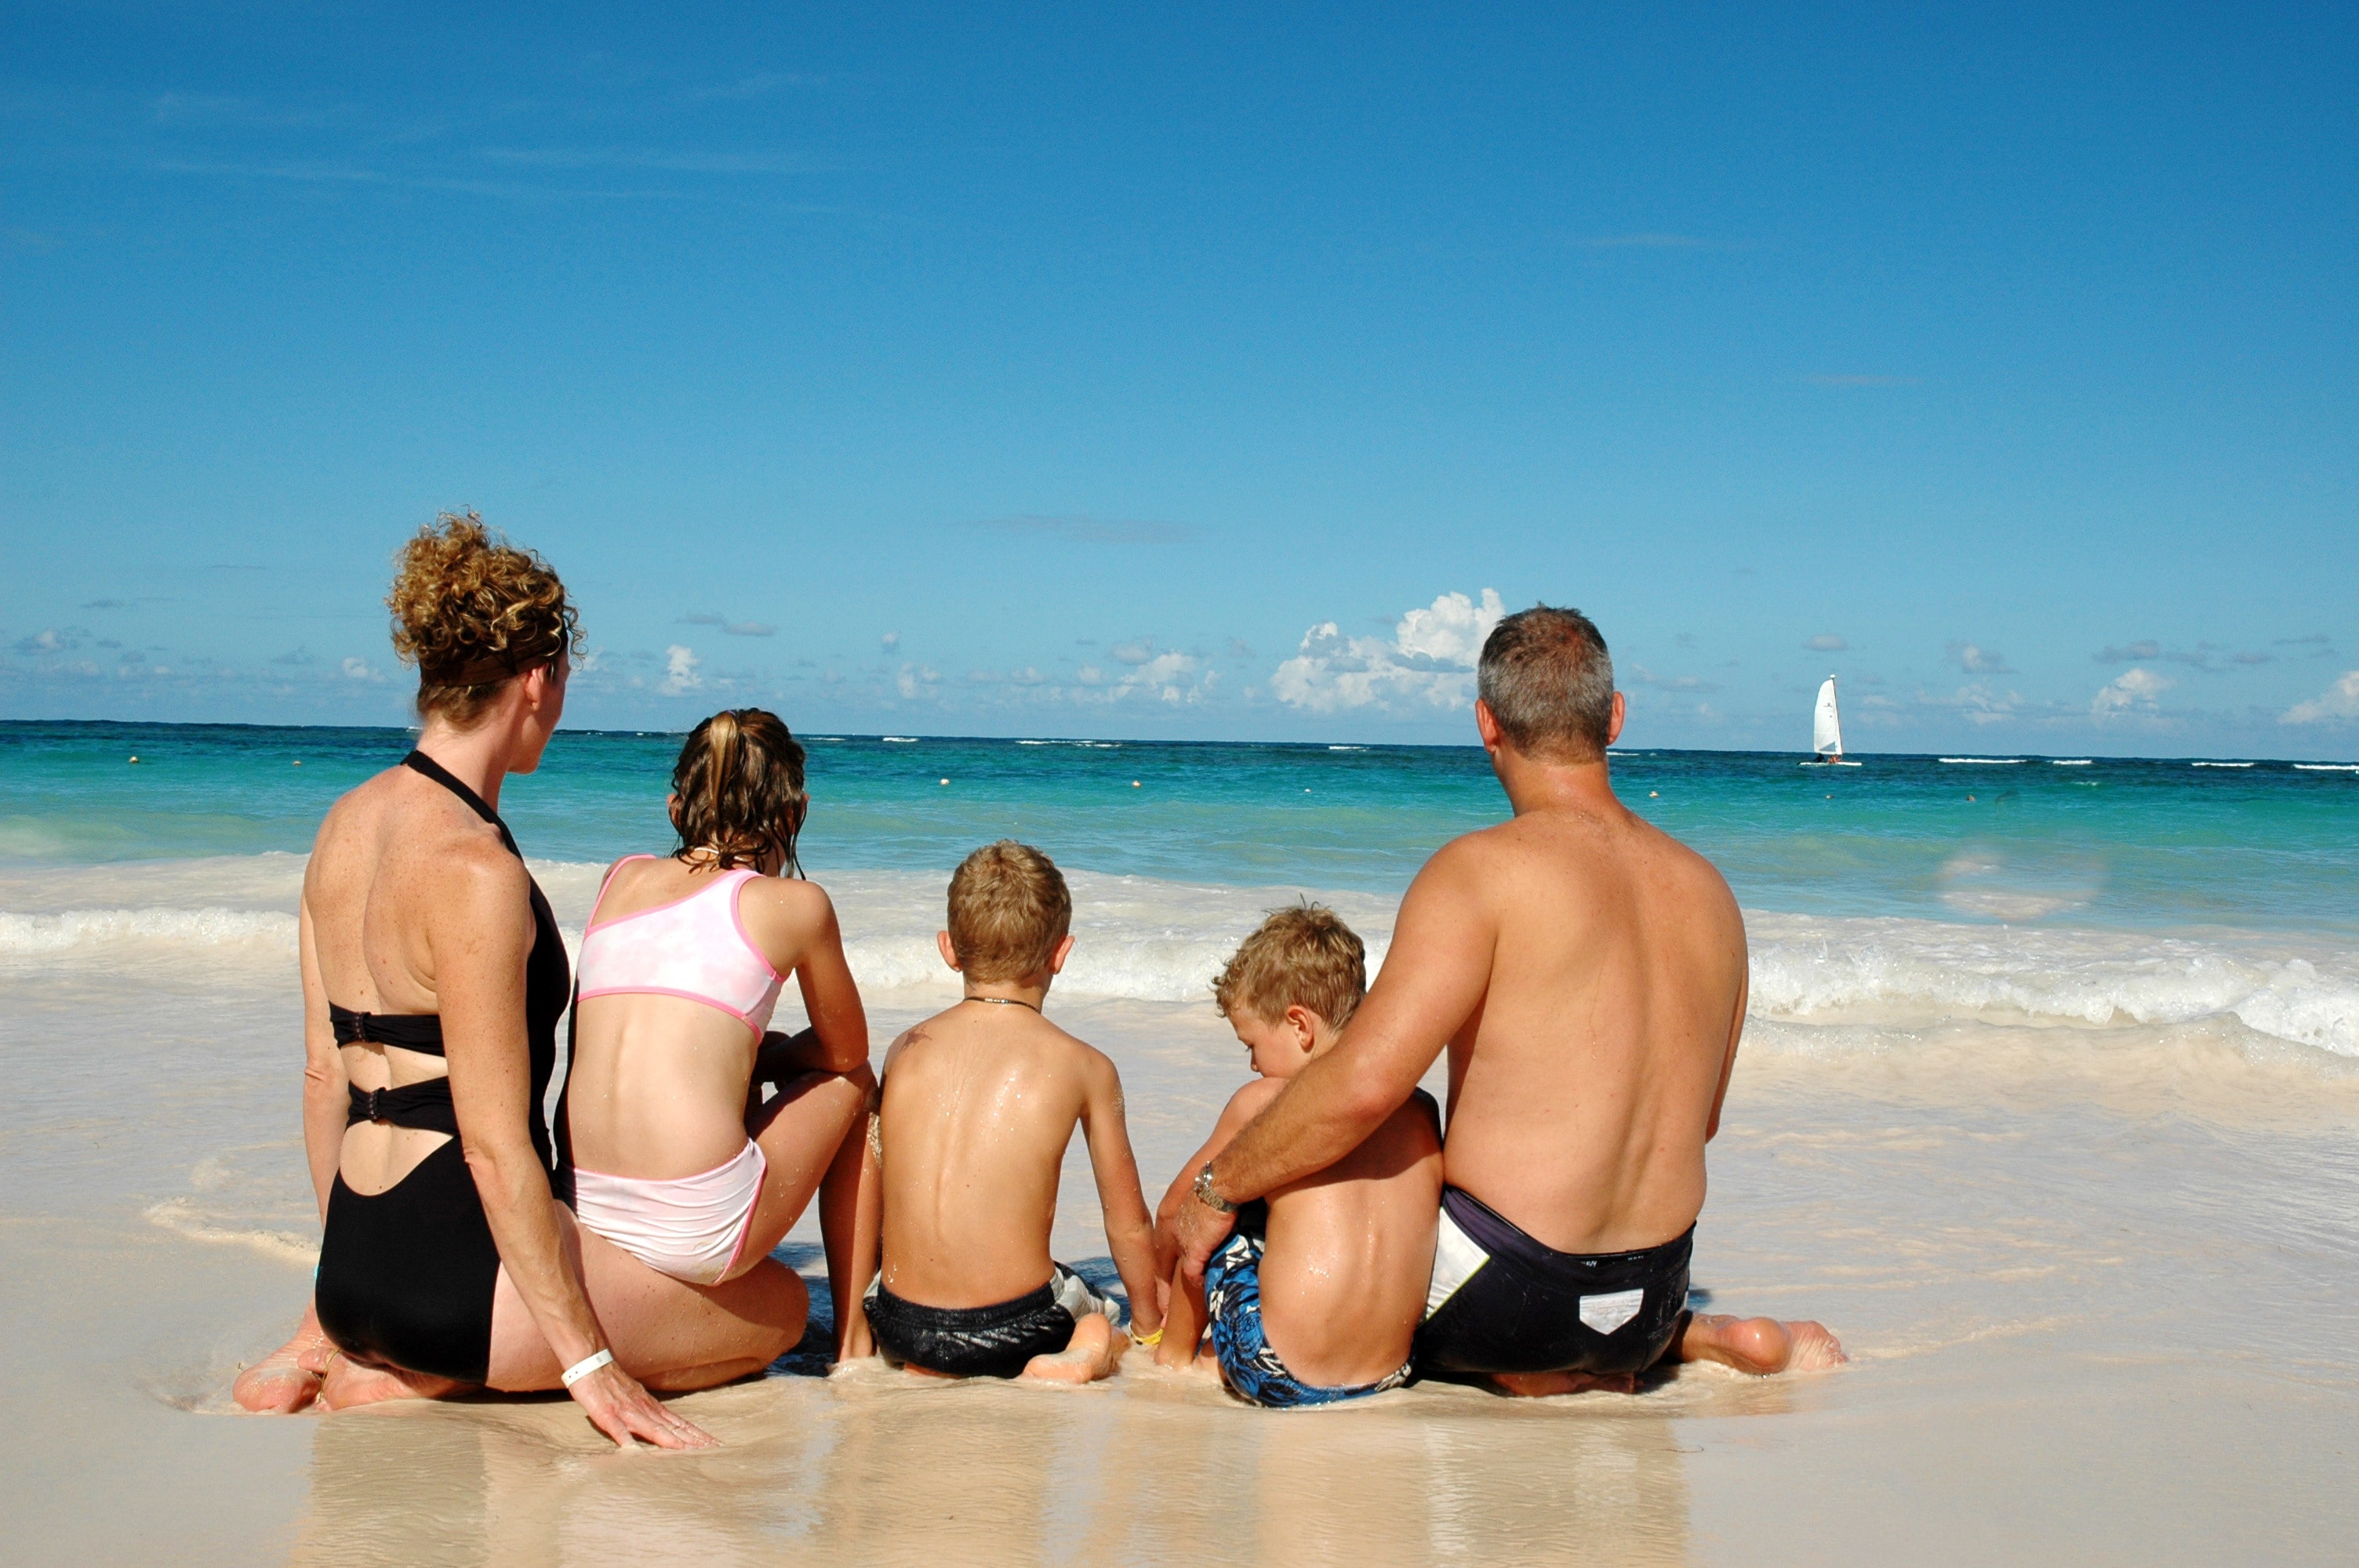 Family holiday in Punta cana